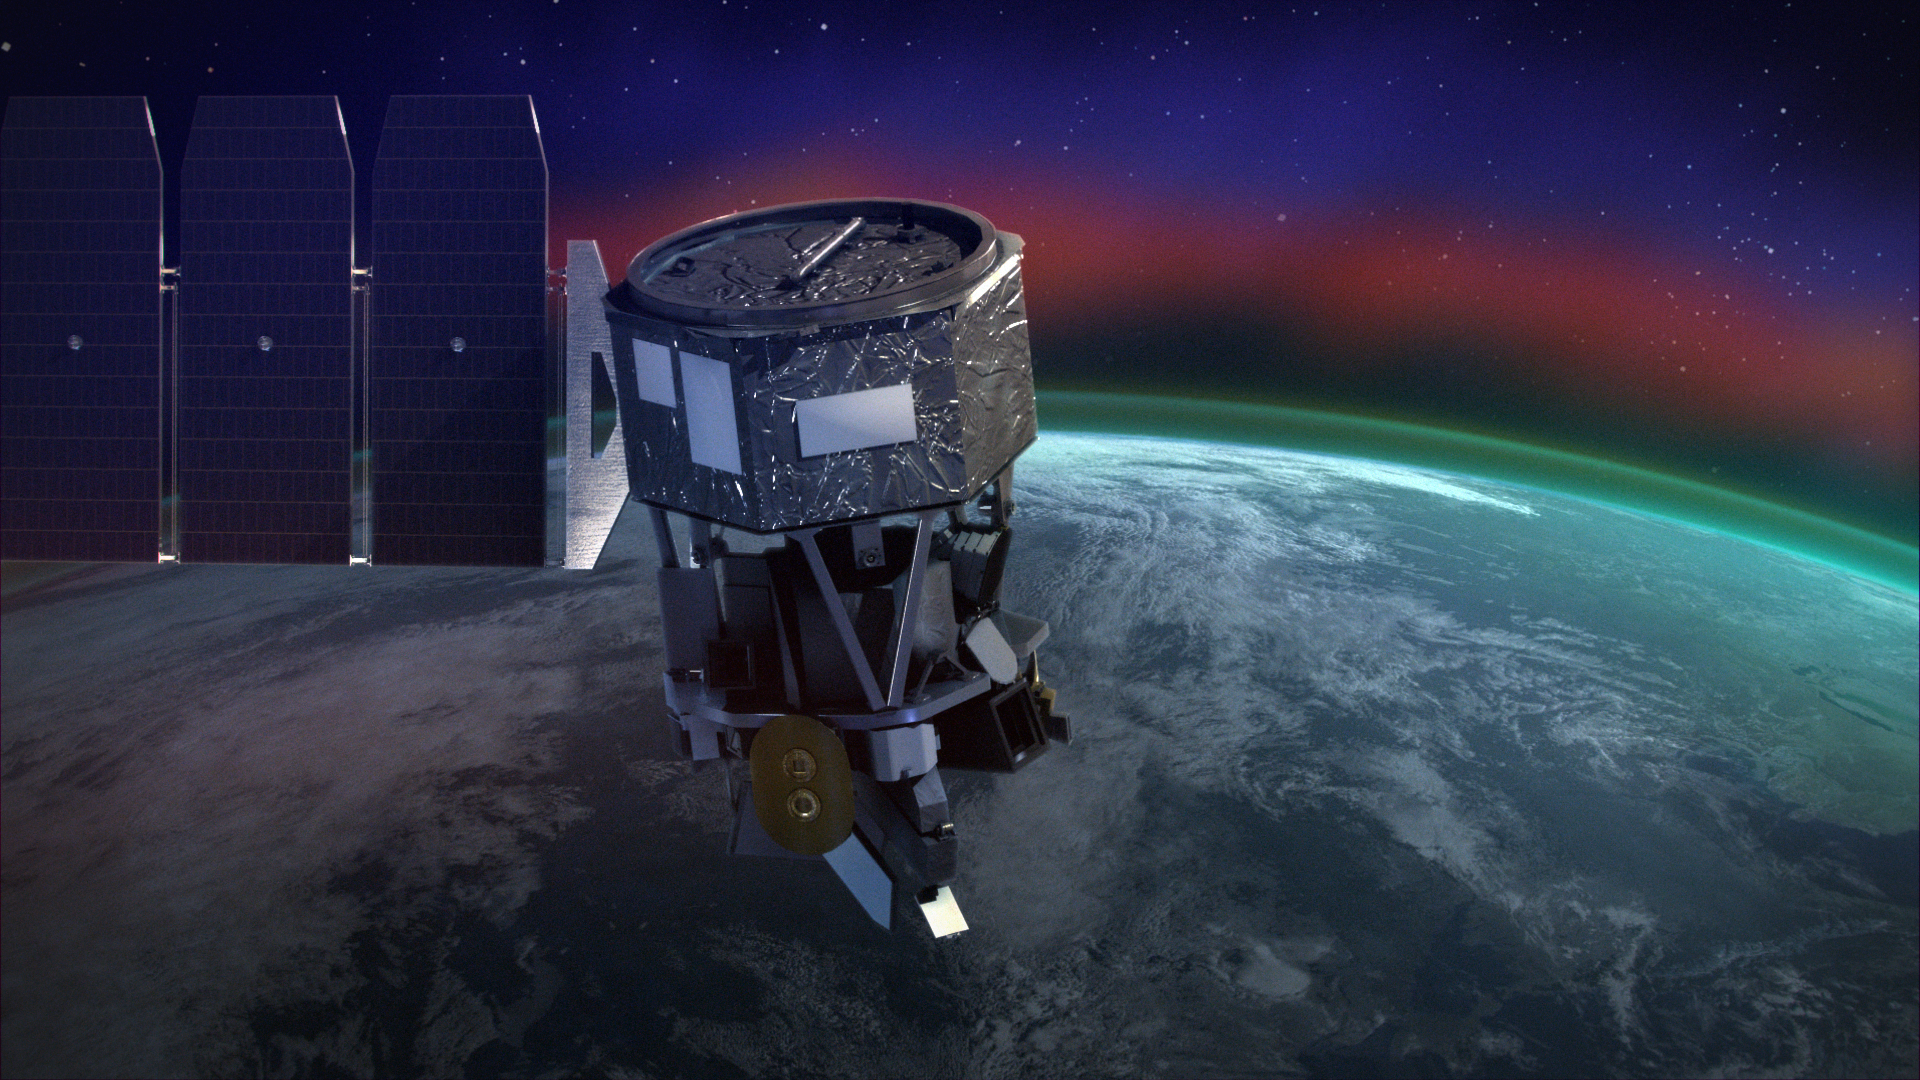 The ICON satellite.